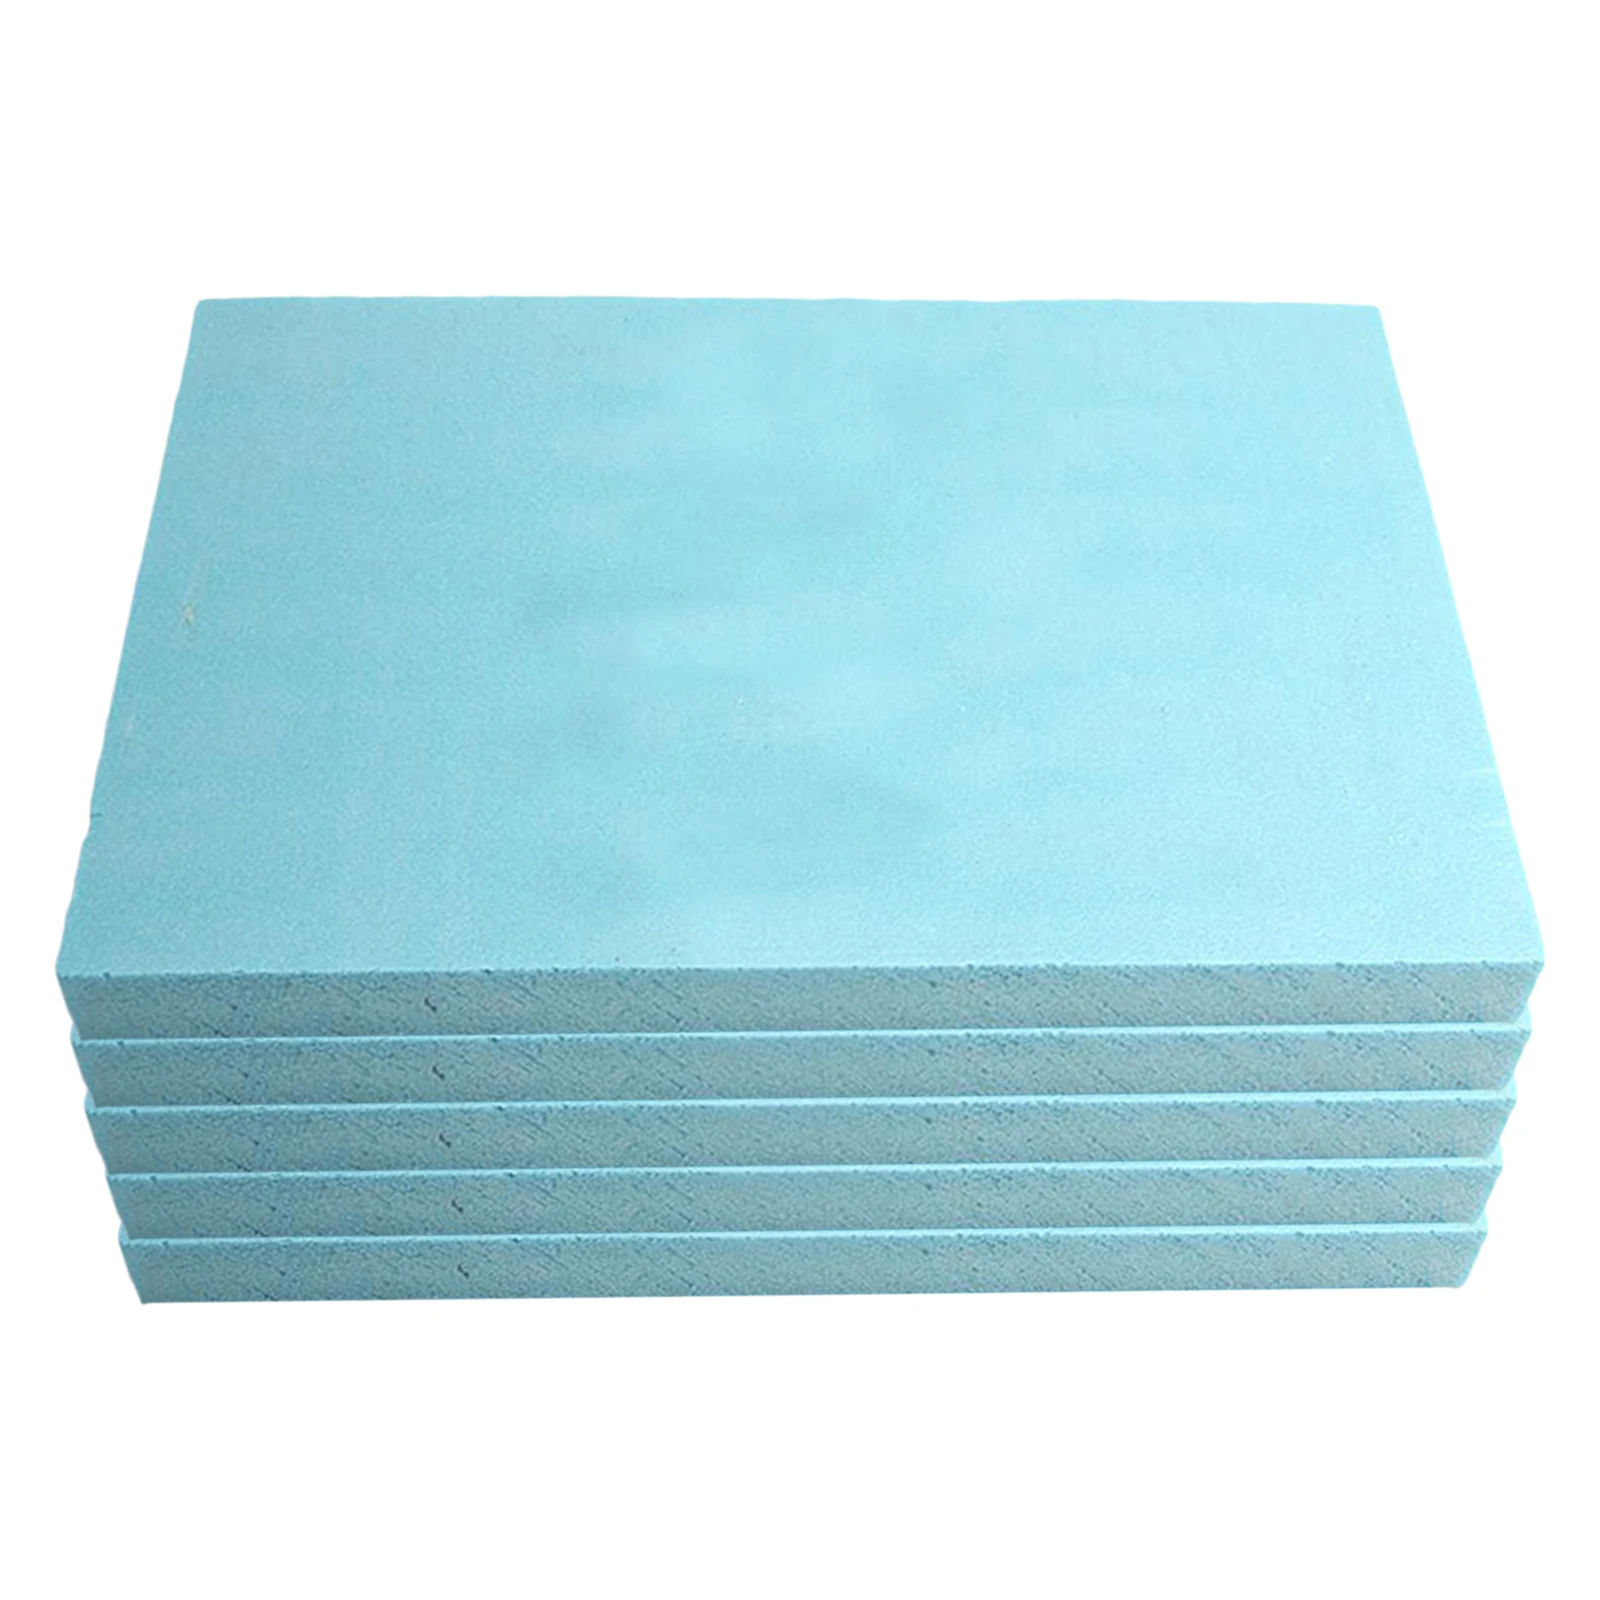 Er is een trend Politiek Edelsteen 5 Stuks Foam Bakstenen Diy Model Materiaal Diorama Base Schuimbaan Foam  Board Vel 11.81x7.87x0.79inch.|Modelbouwen Kits| - AliExpress